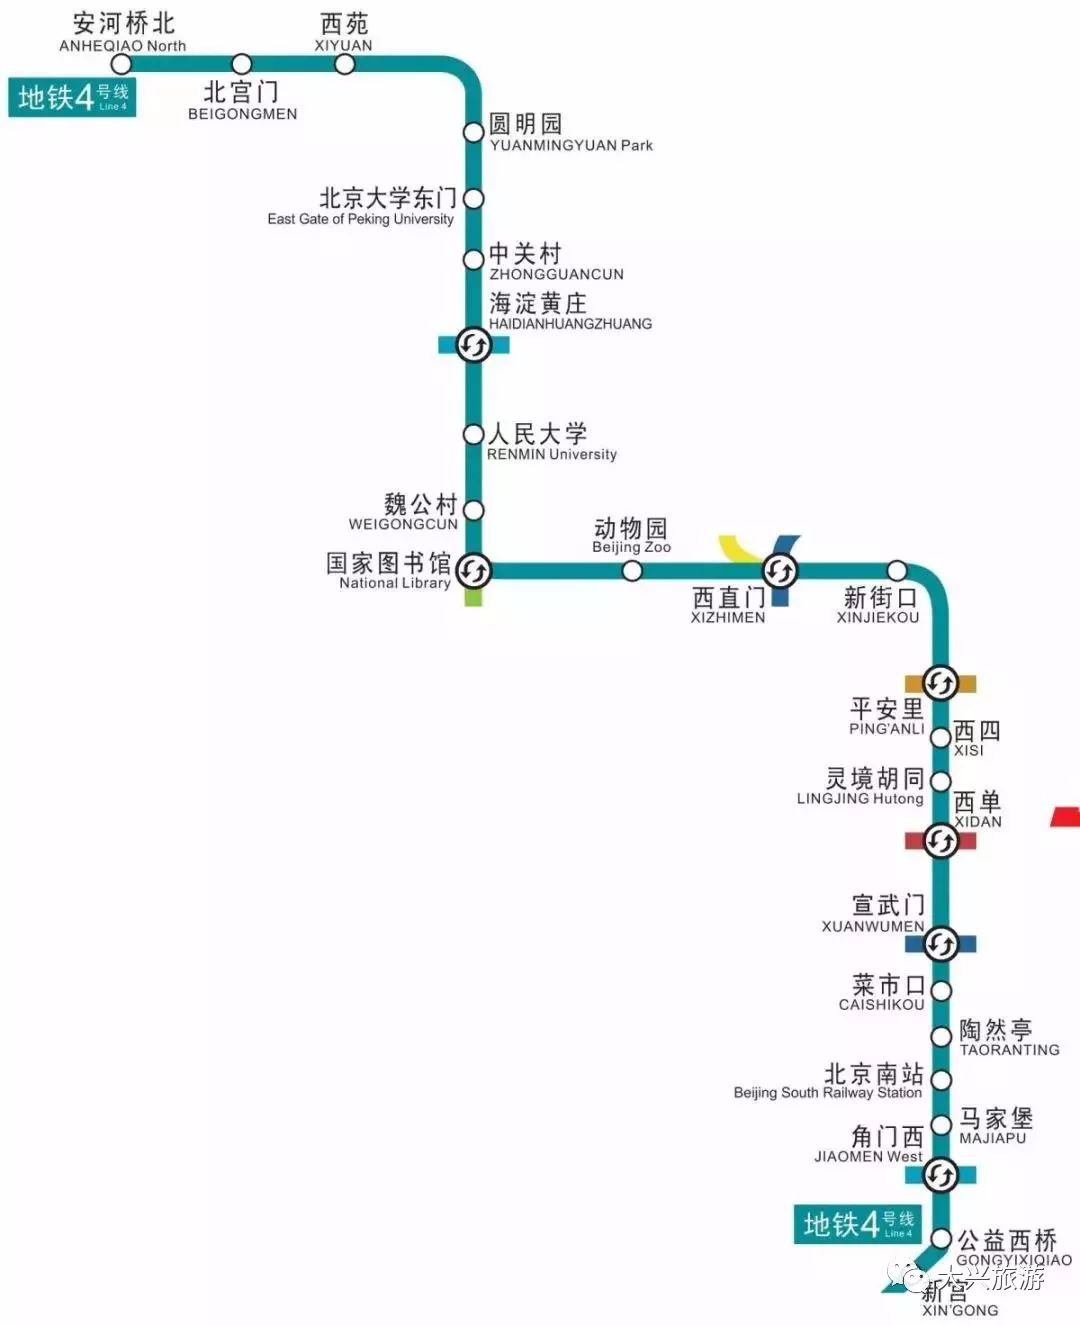 就有委员再次提案 "北京地铁4号线南延至大兴区庞各庄镇" 北京地铁4号